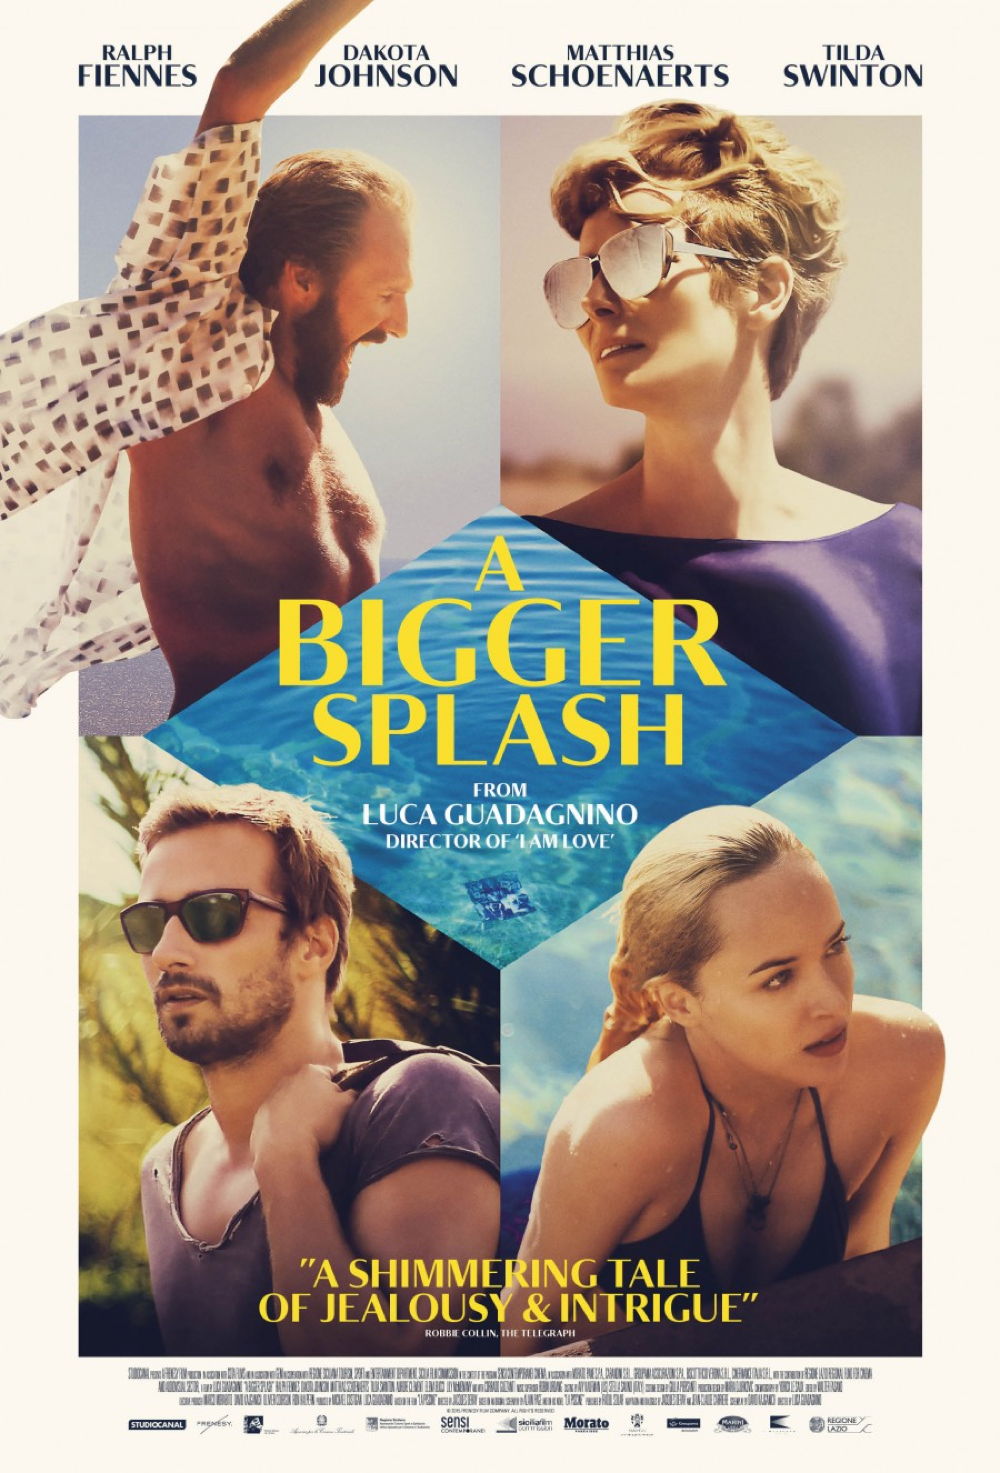 moviegoer.com: A BIGGER SPLASH movie poster